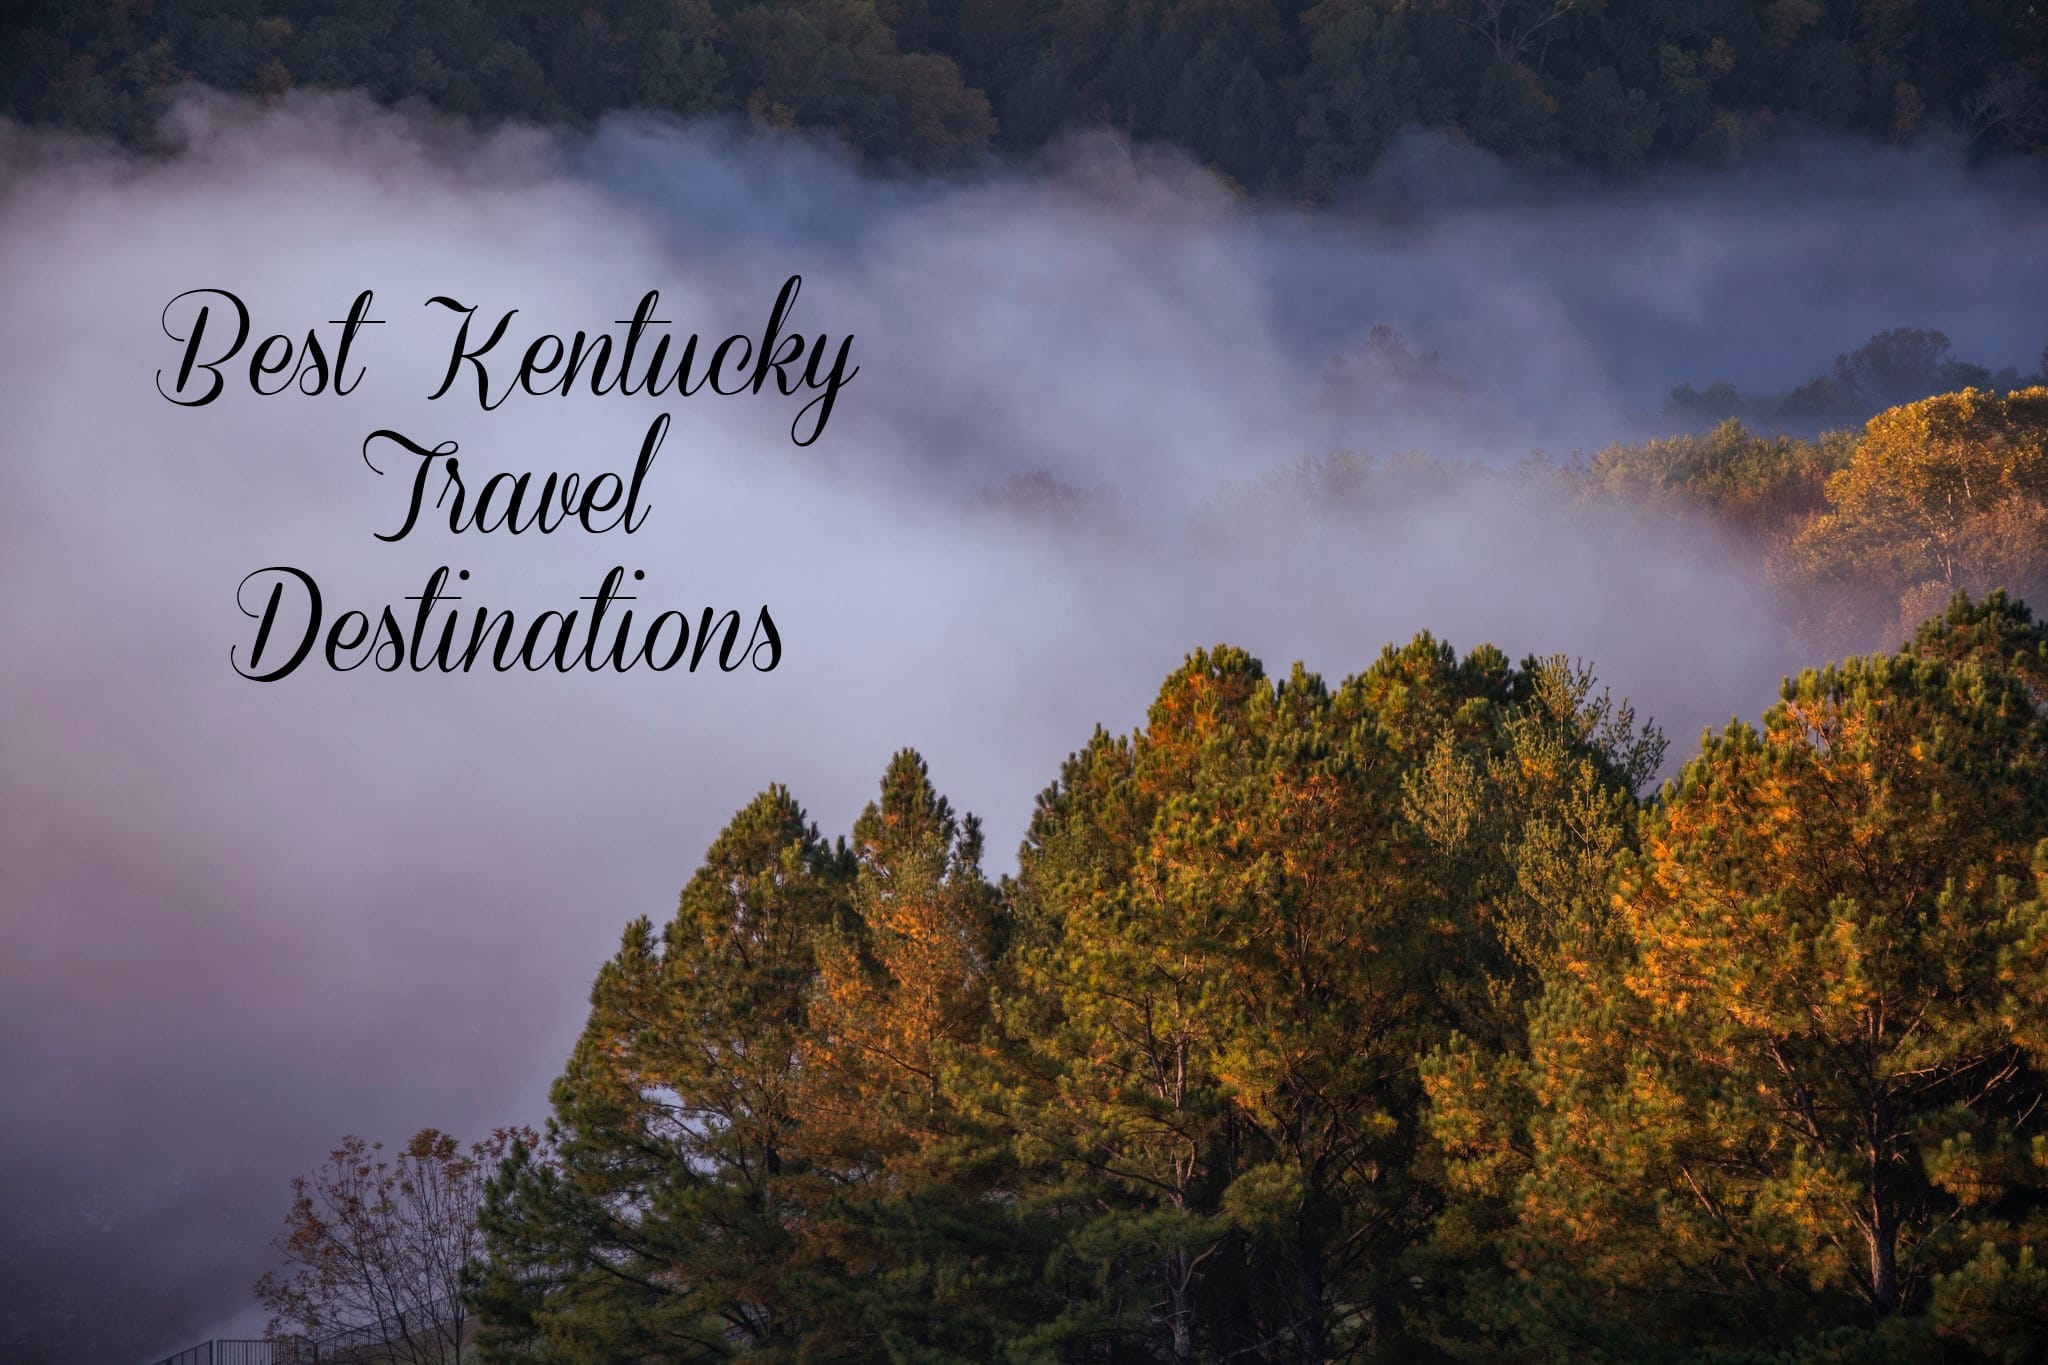 Best Kentucky Travel Destinations